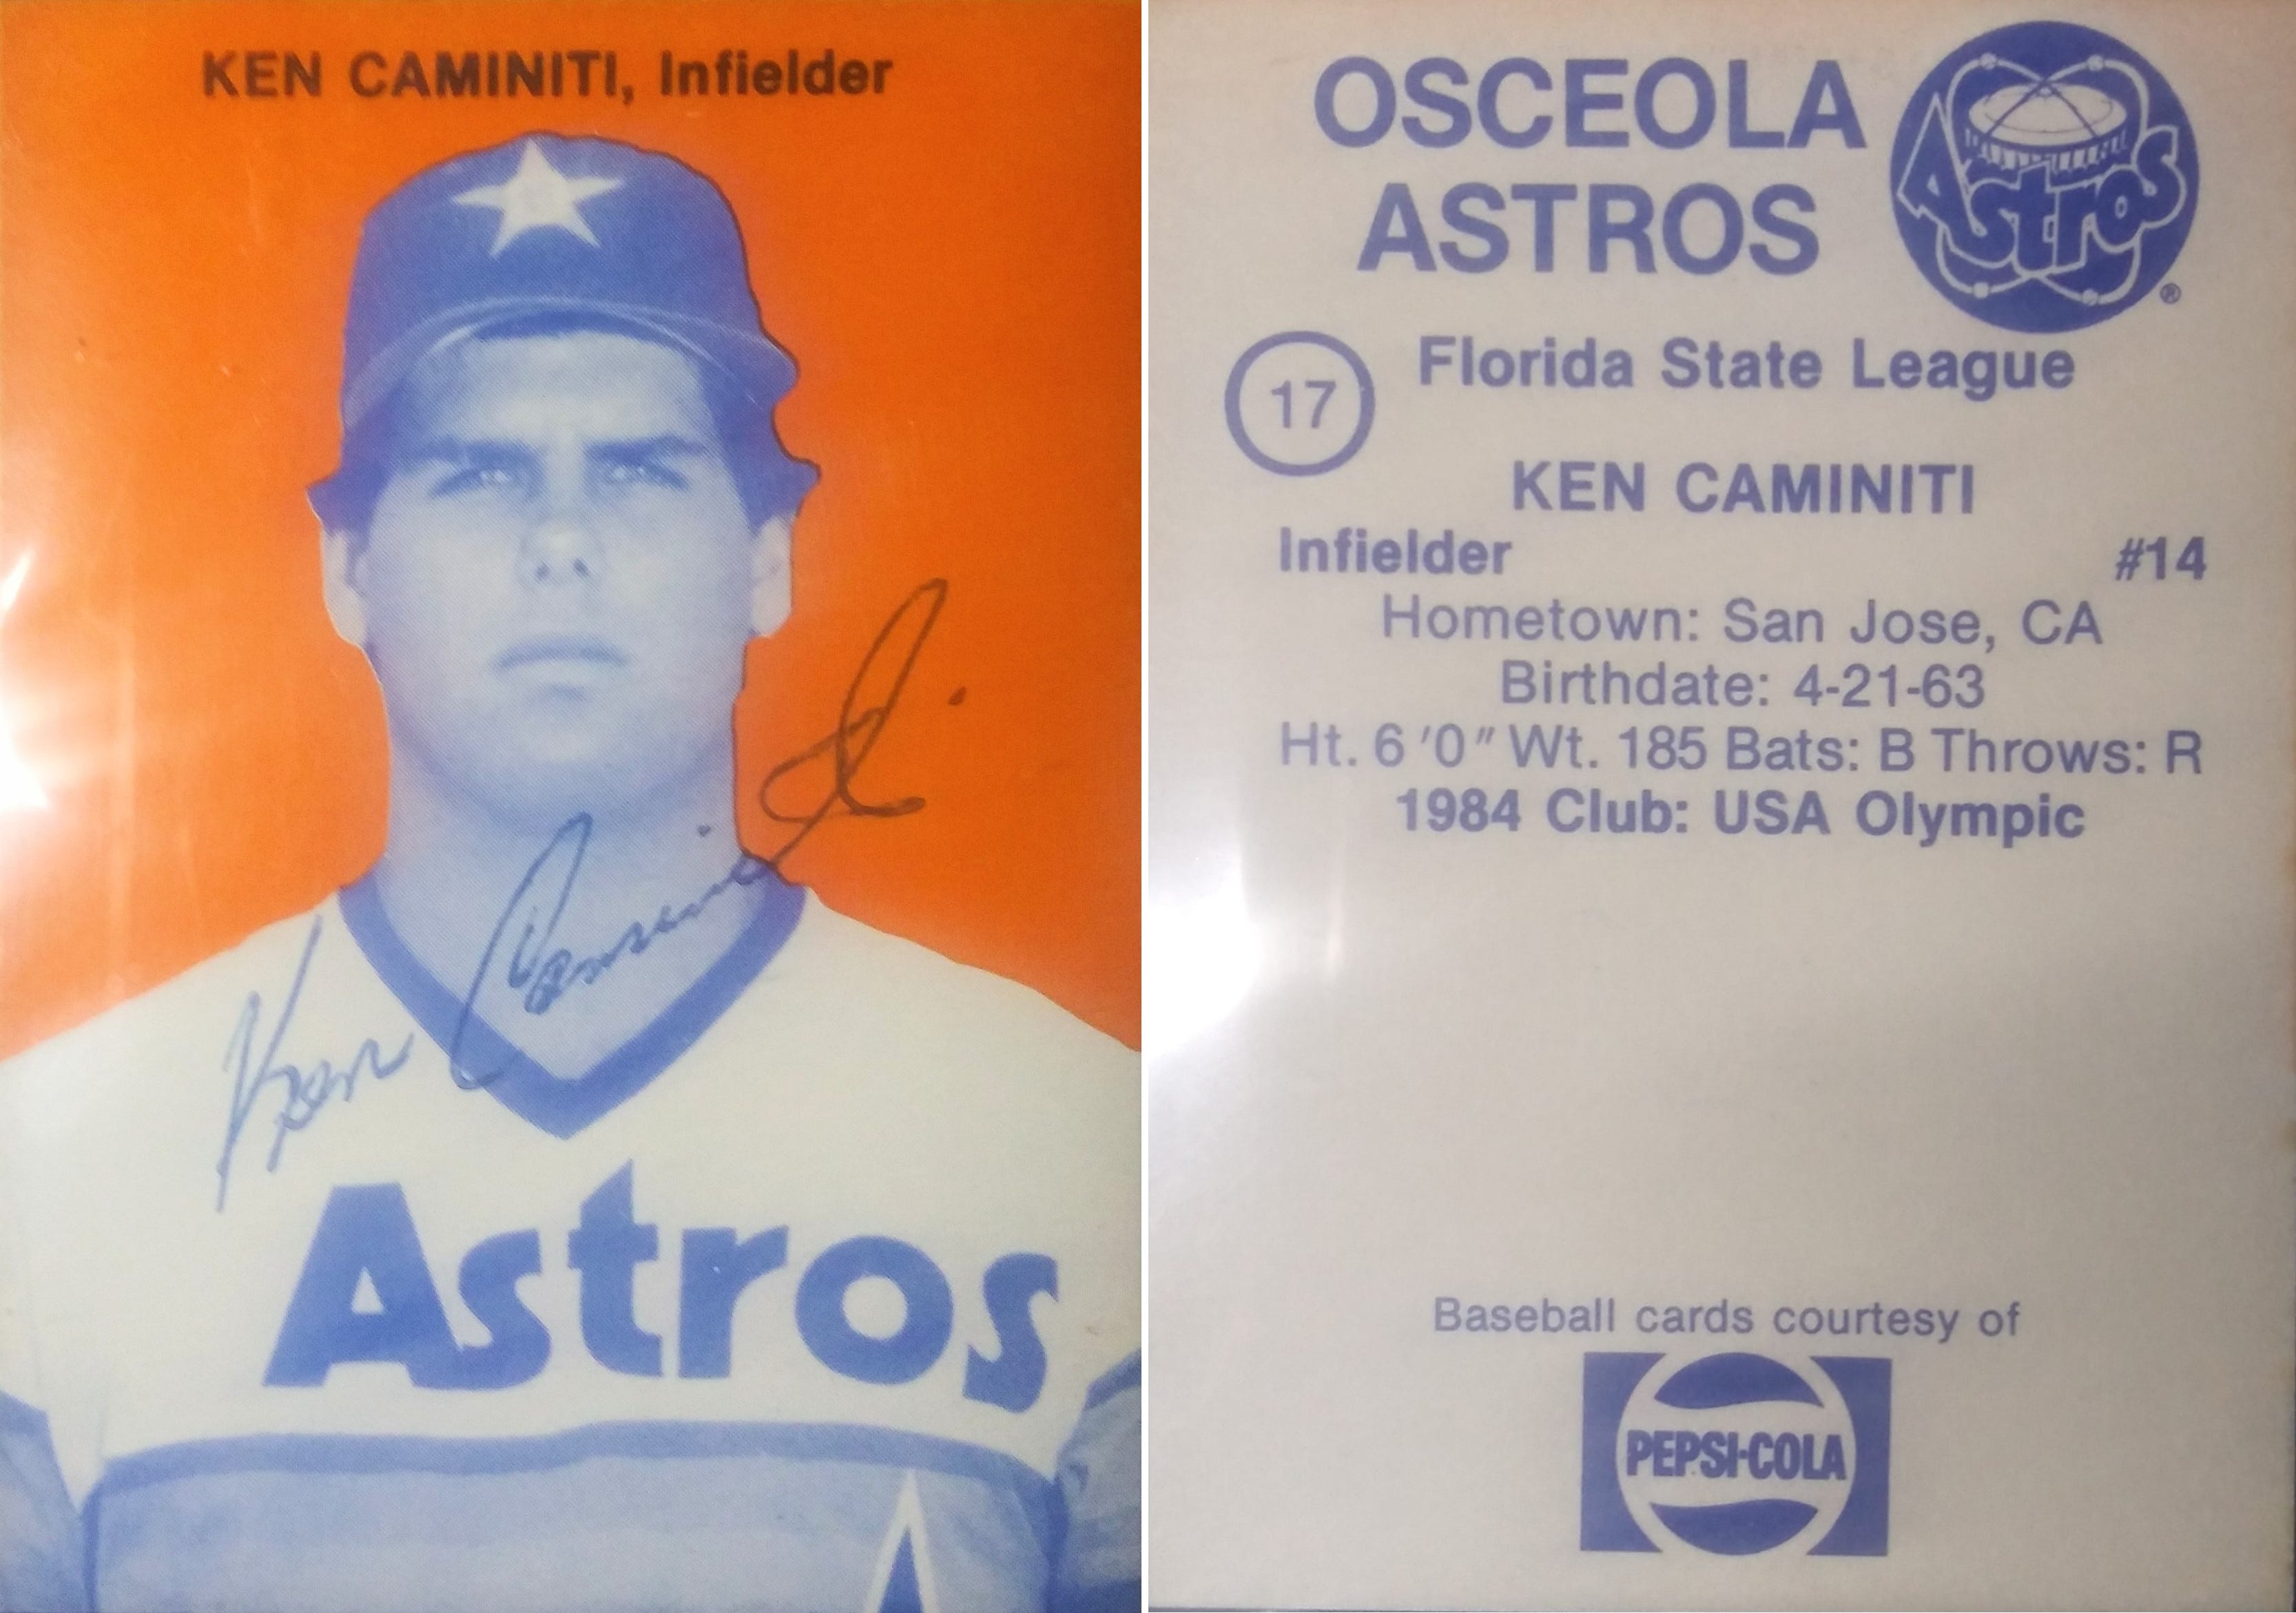 Ken Caminiti  Houston astros baseball, Astros baseball, Houston astros